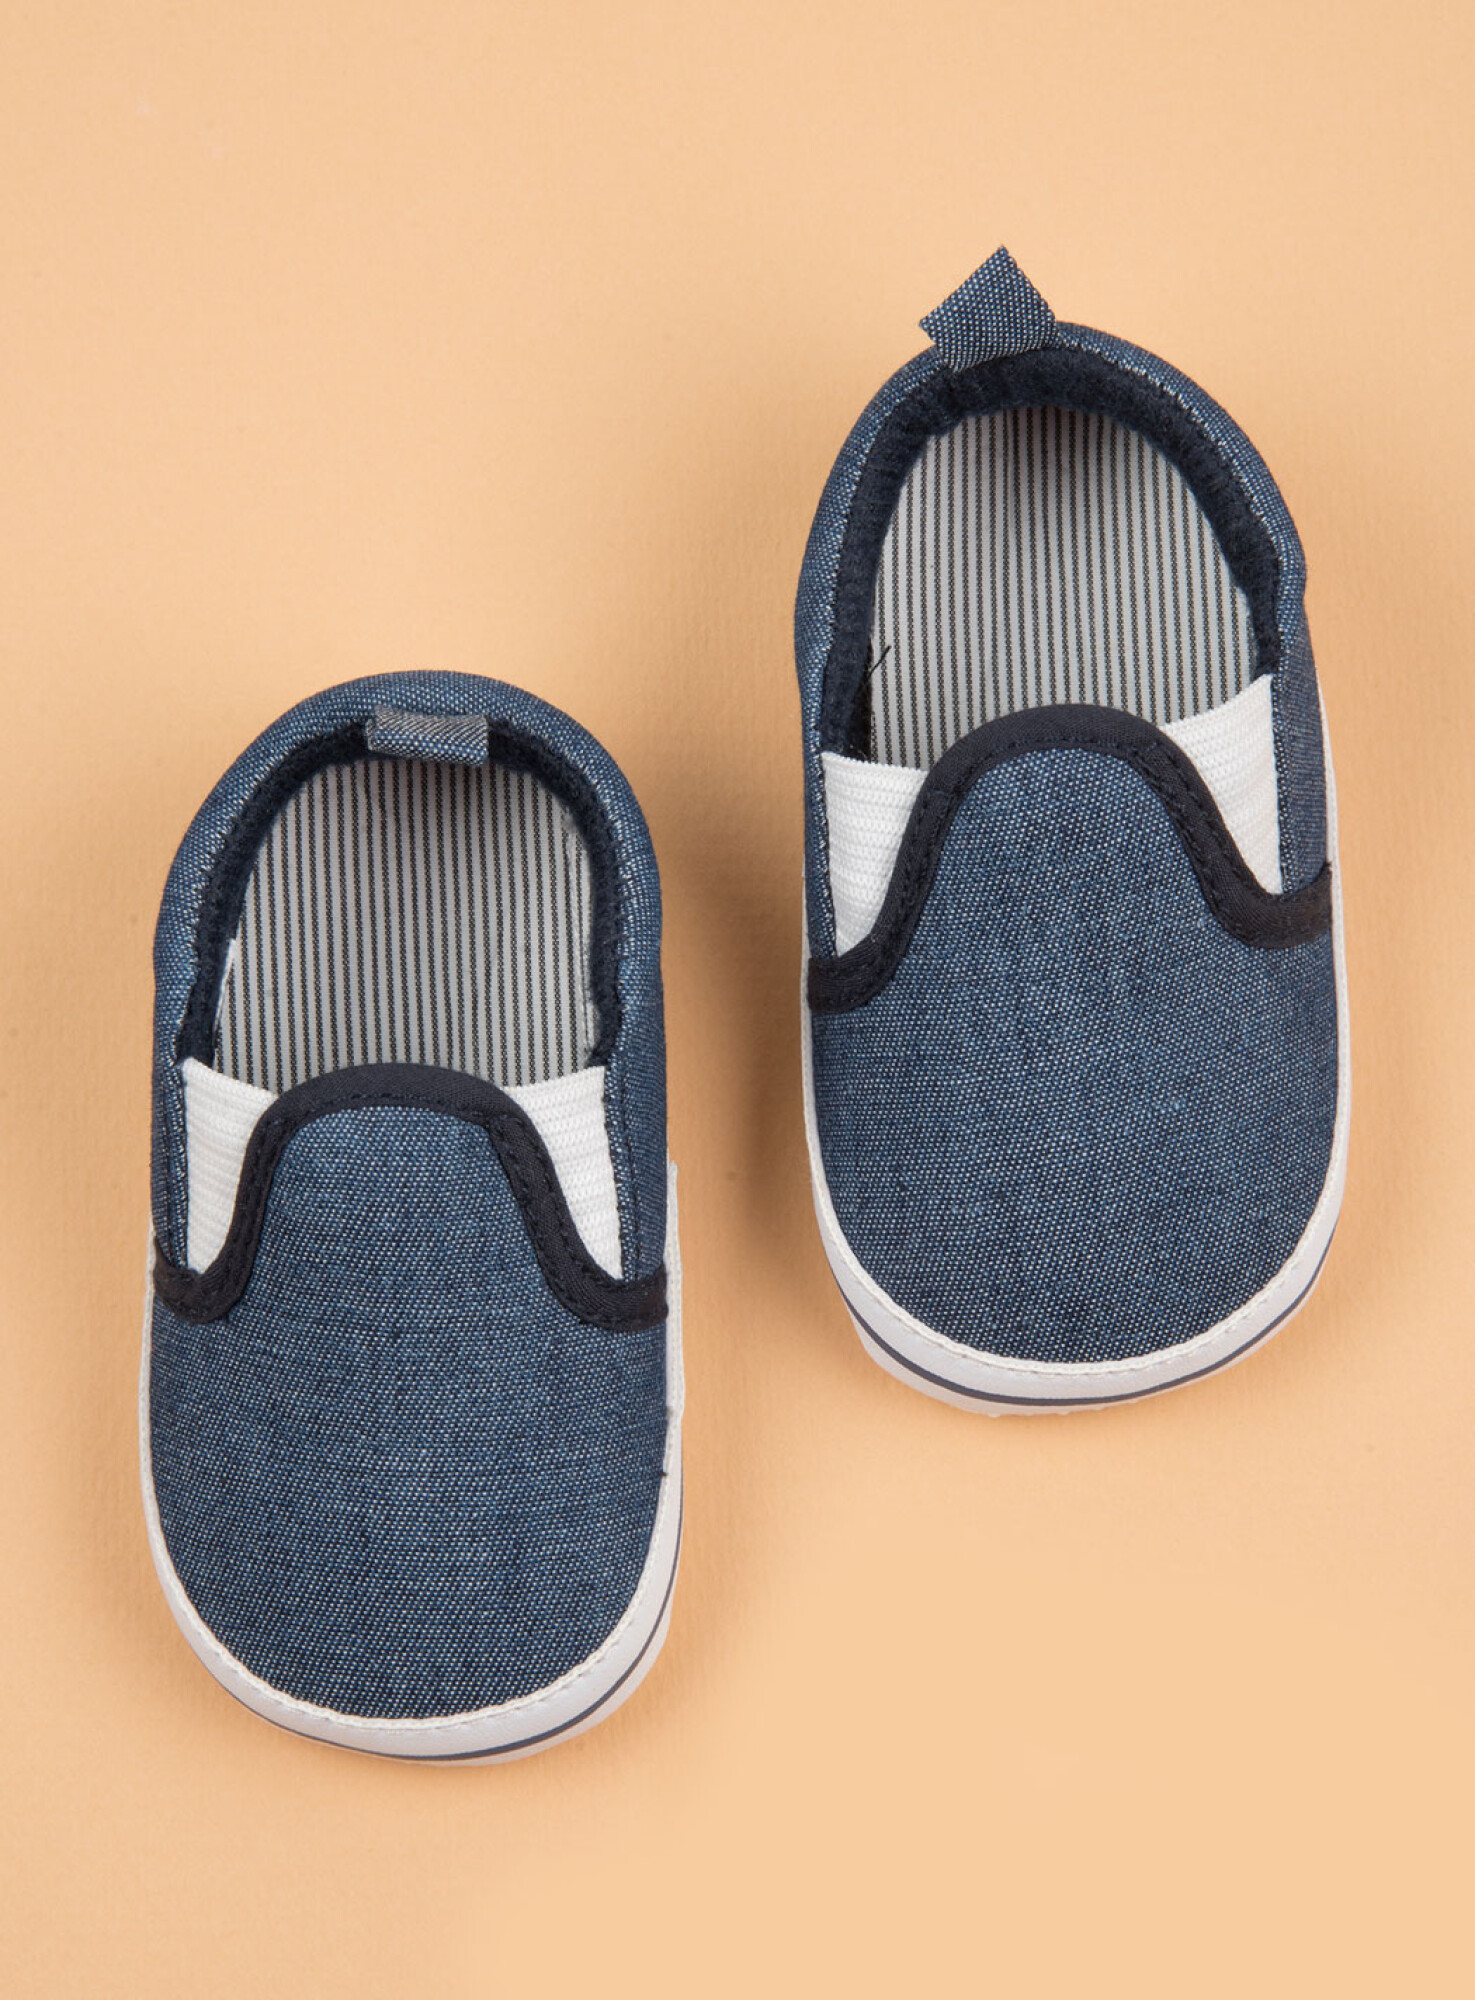 Zapatos de bebé Diseños varon — SiSi